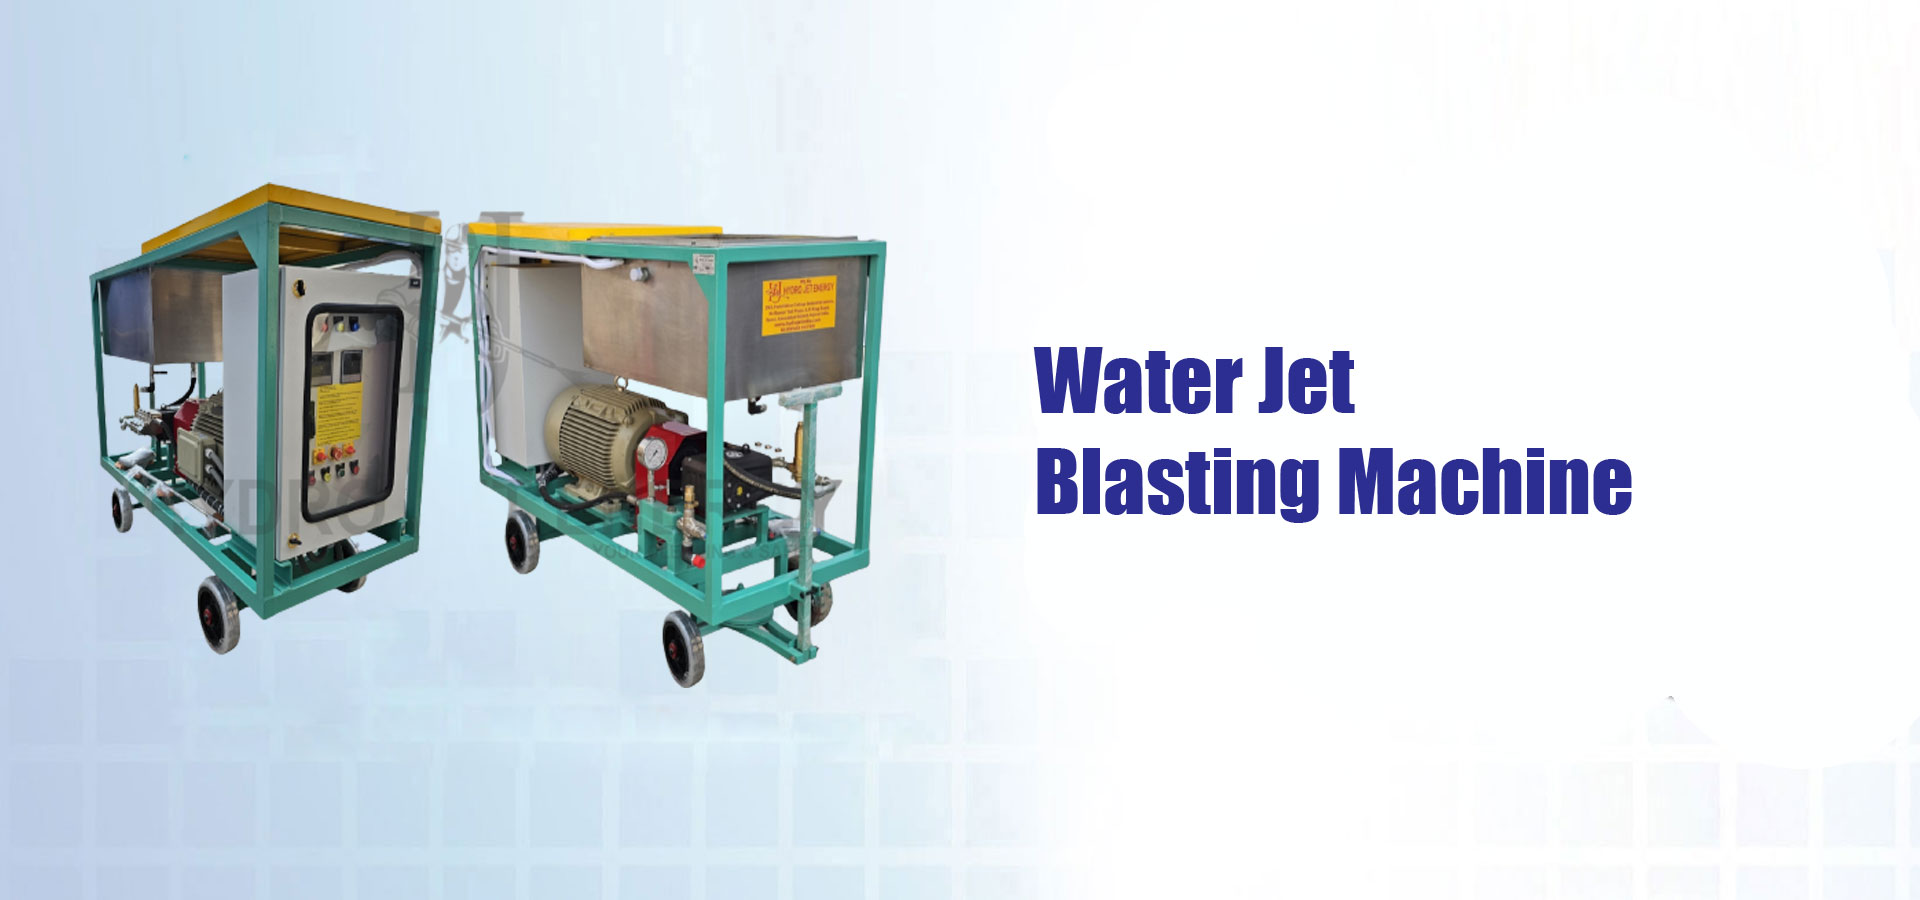 Water Jet Blasting Machine